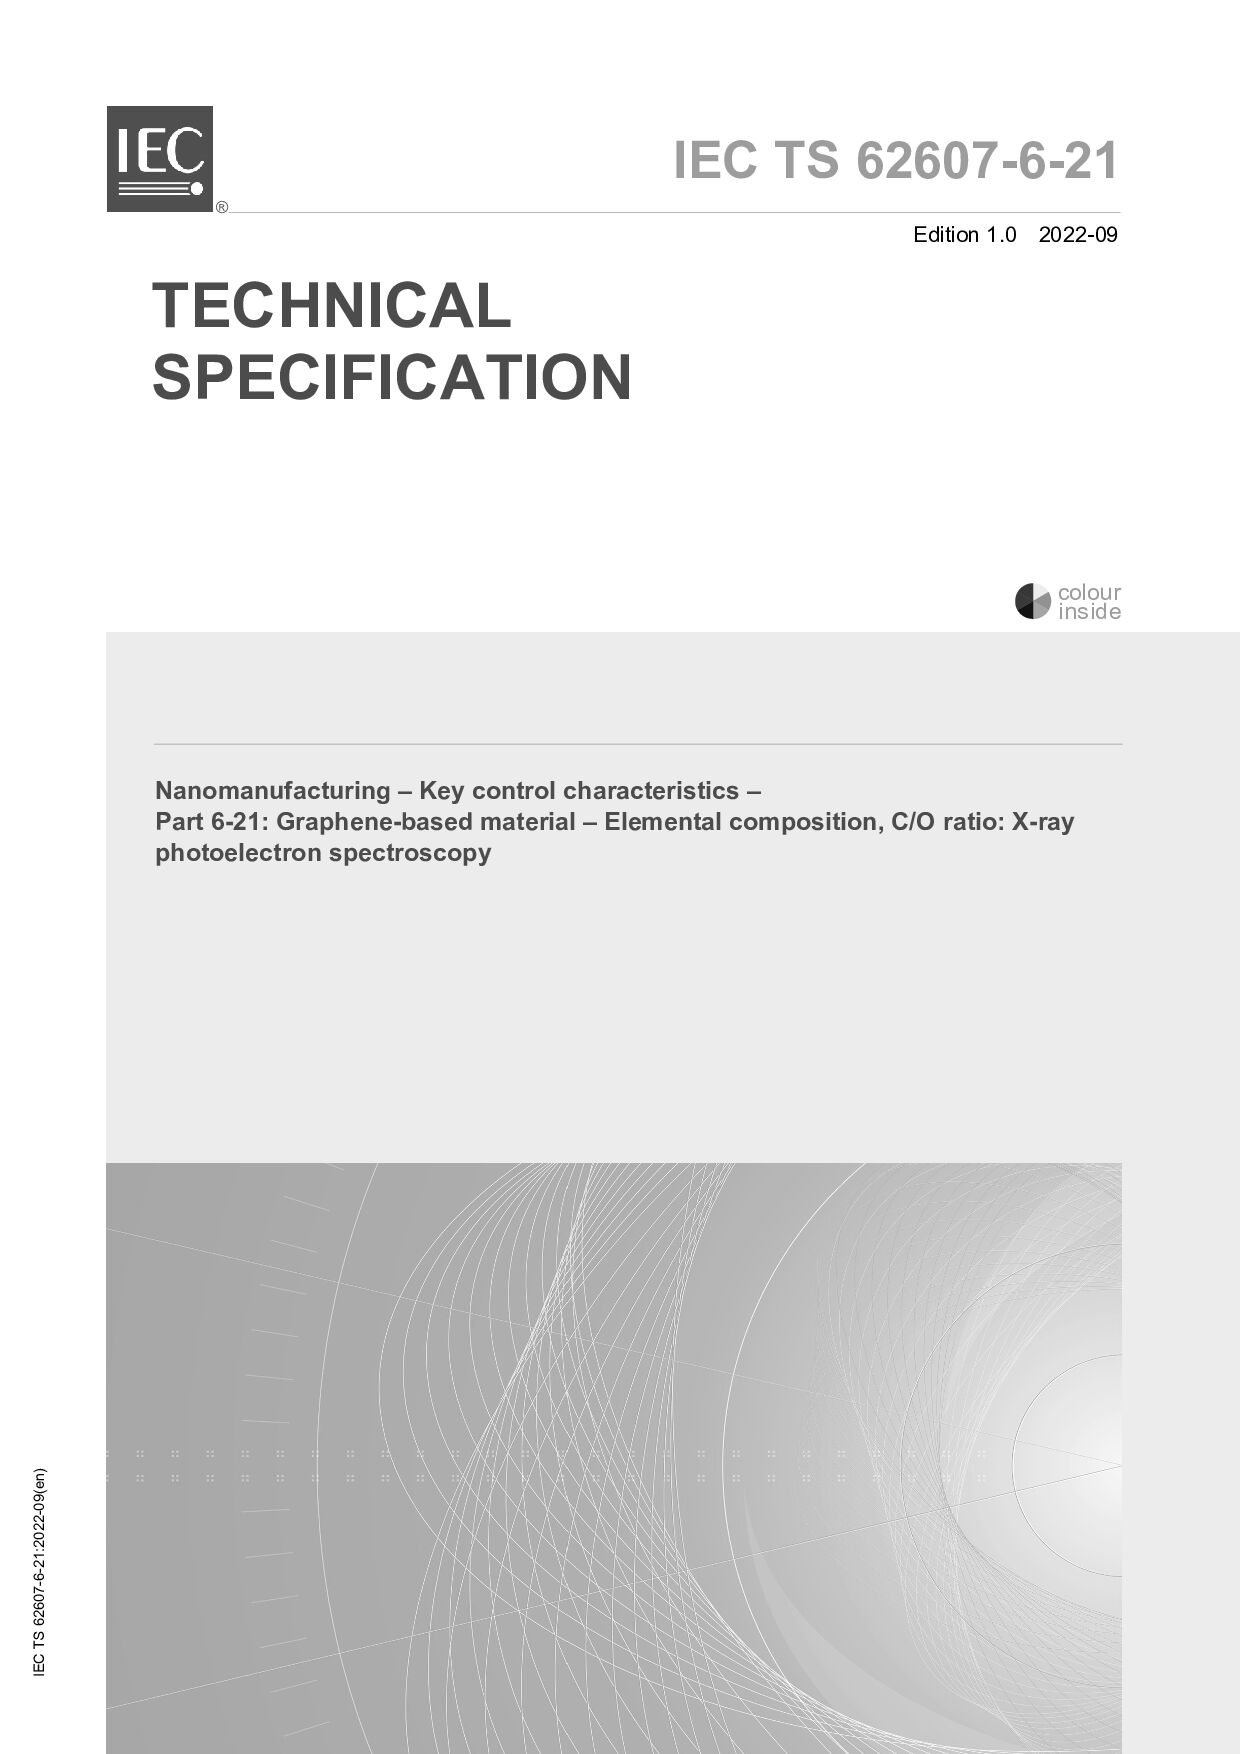 IEC TS 62607-6-21:2022